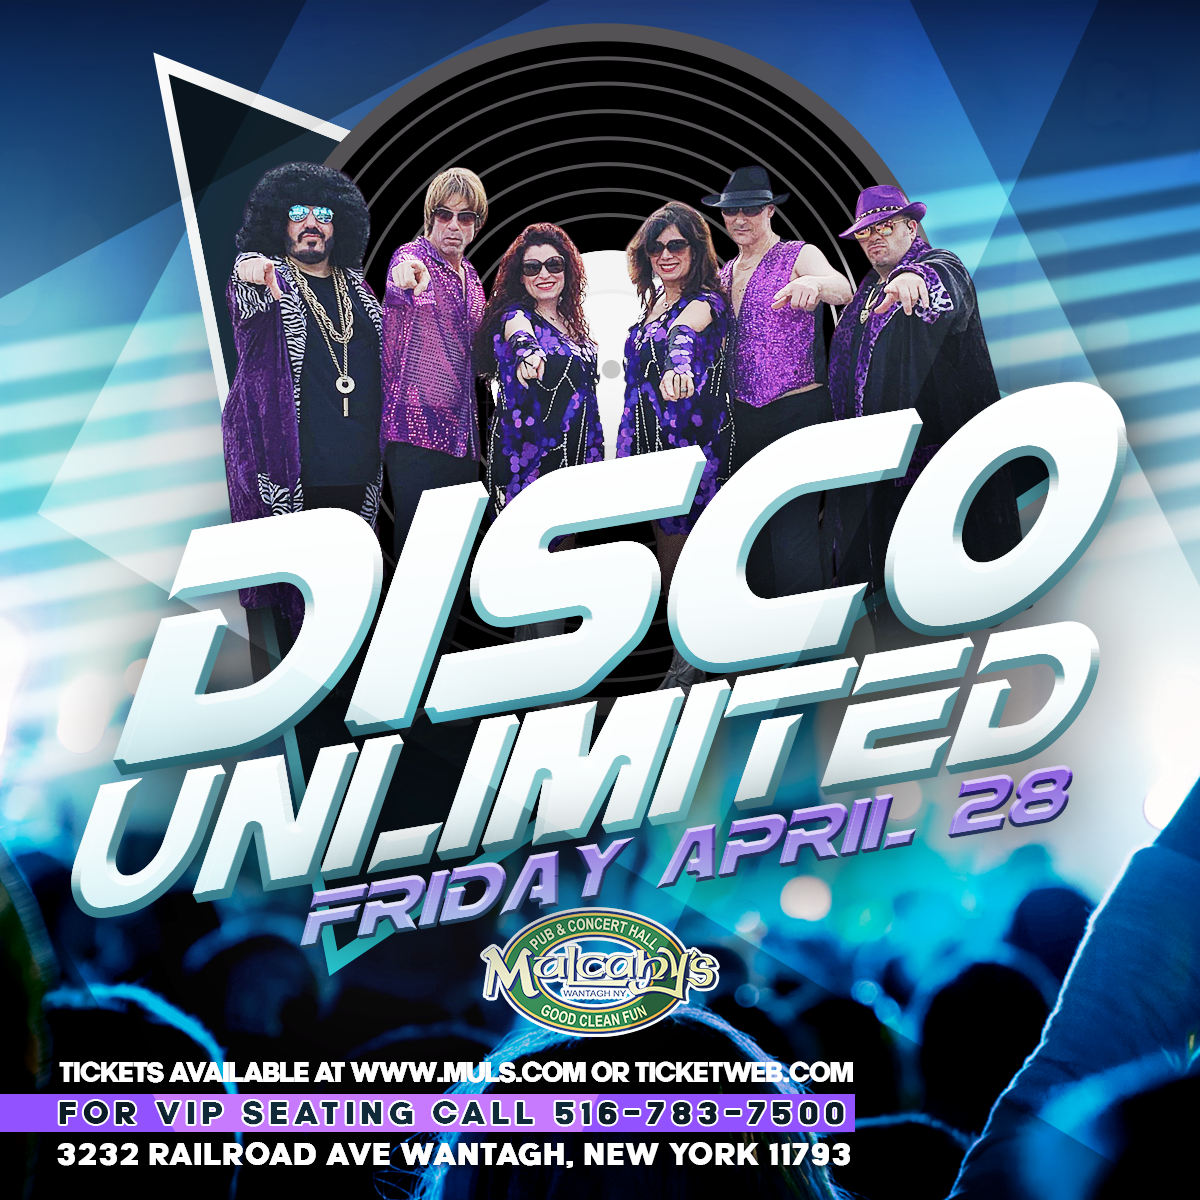 Disco Unlimited April 28 Insta copy.png